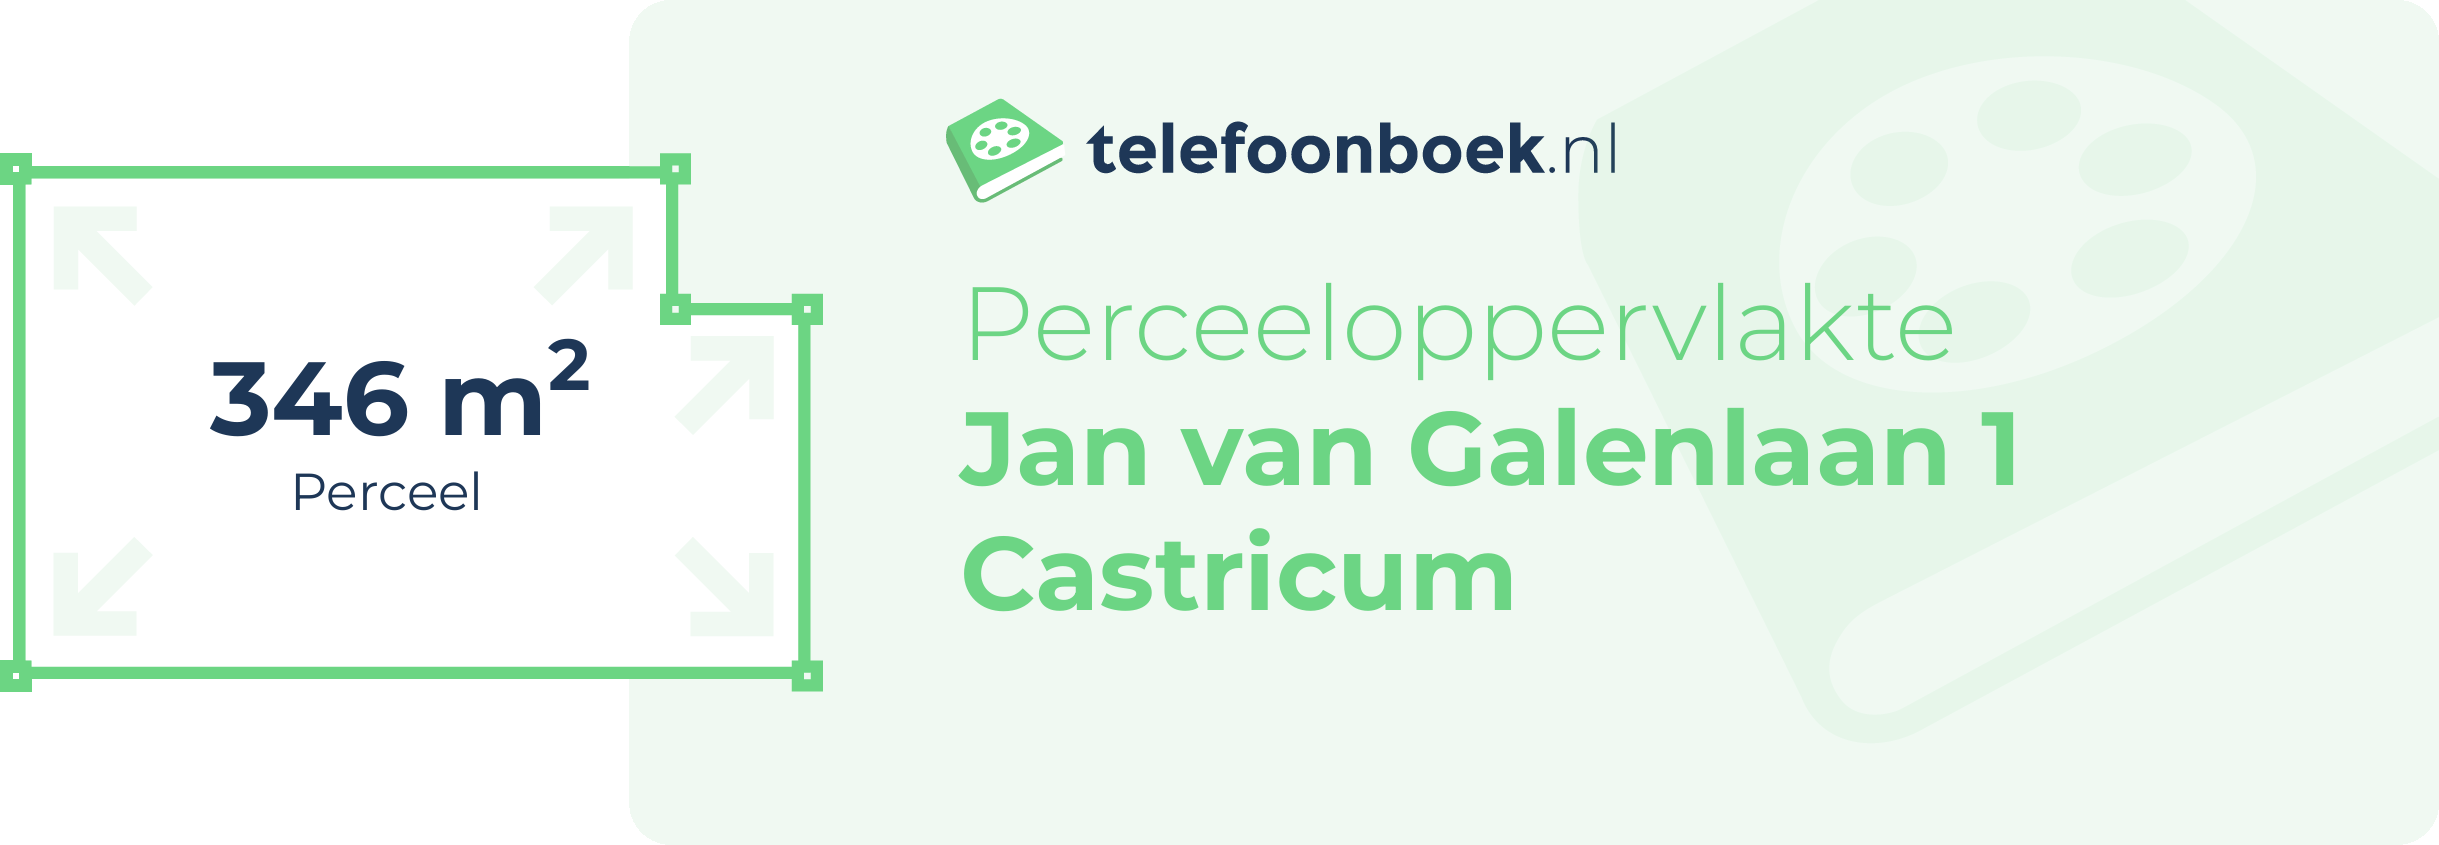 Perceeloppervlakte Jan Van Galenlaan 1 Castricum